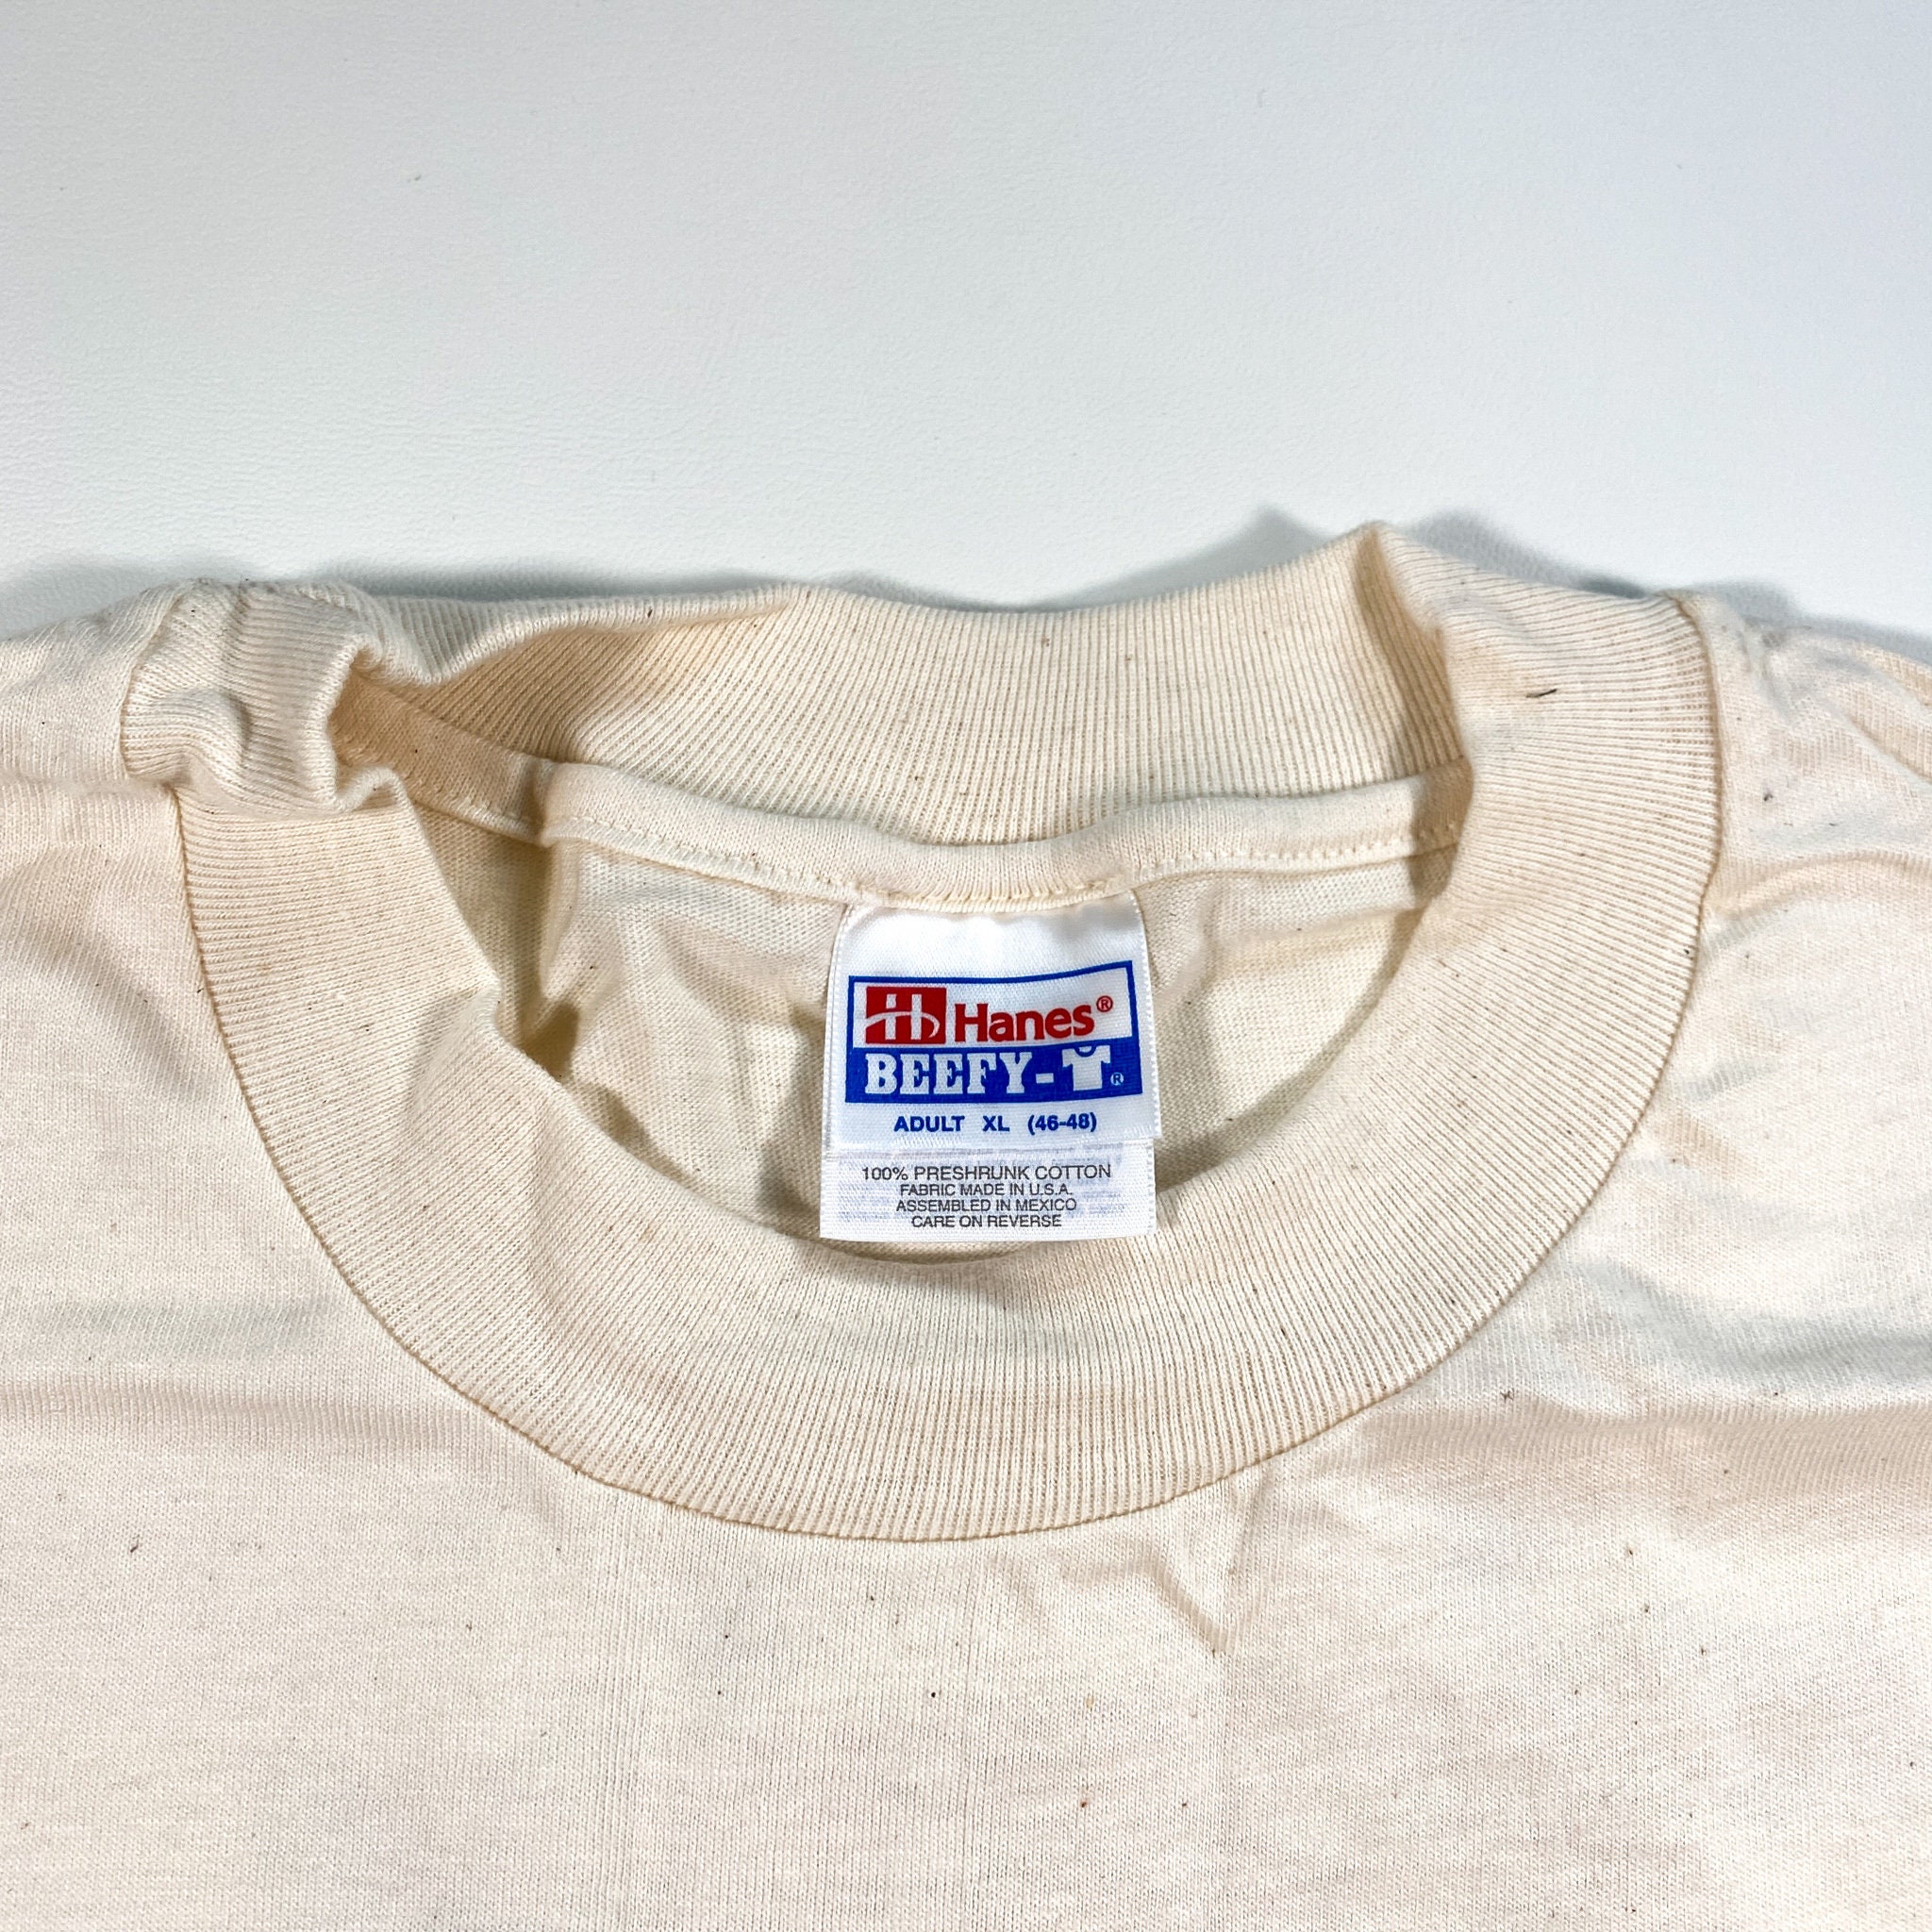 Vintage Martinsville Nascar Shirt 90s martinsville va shirt | Etsy